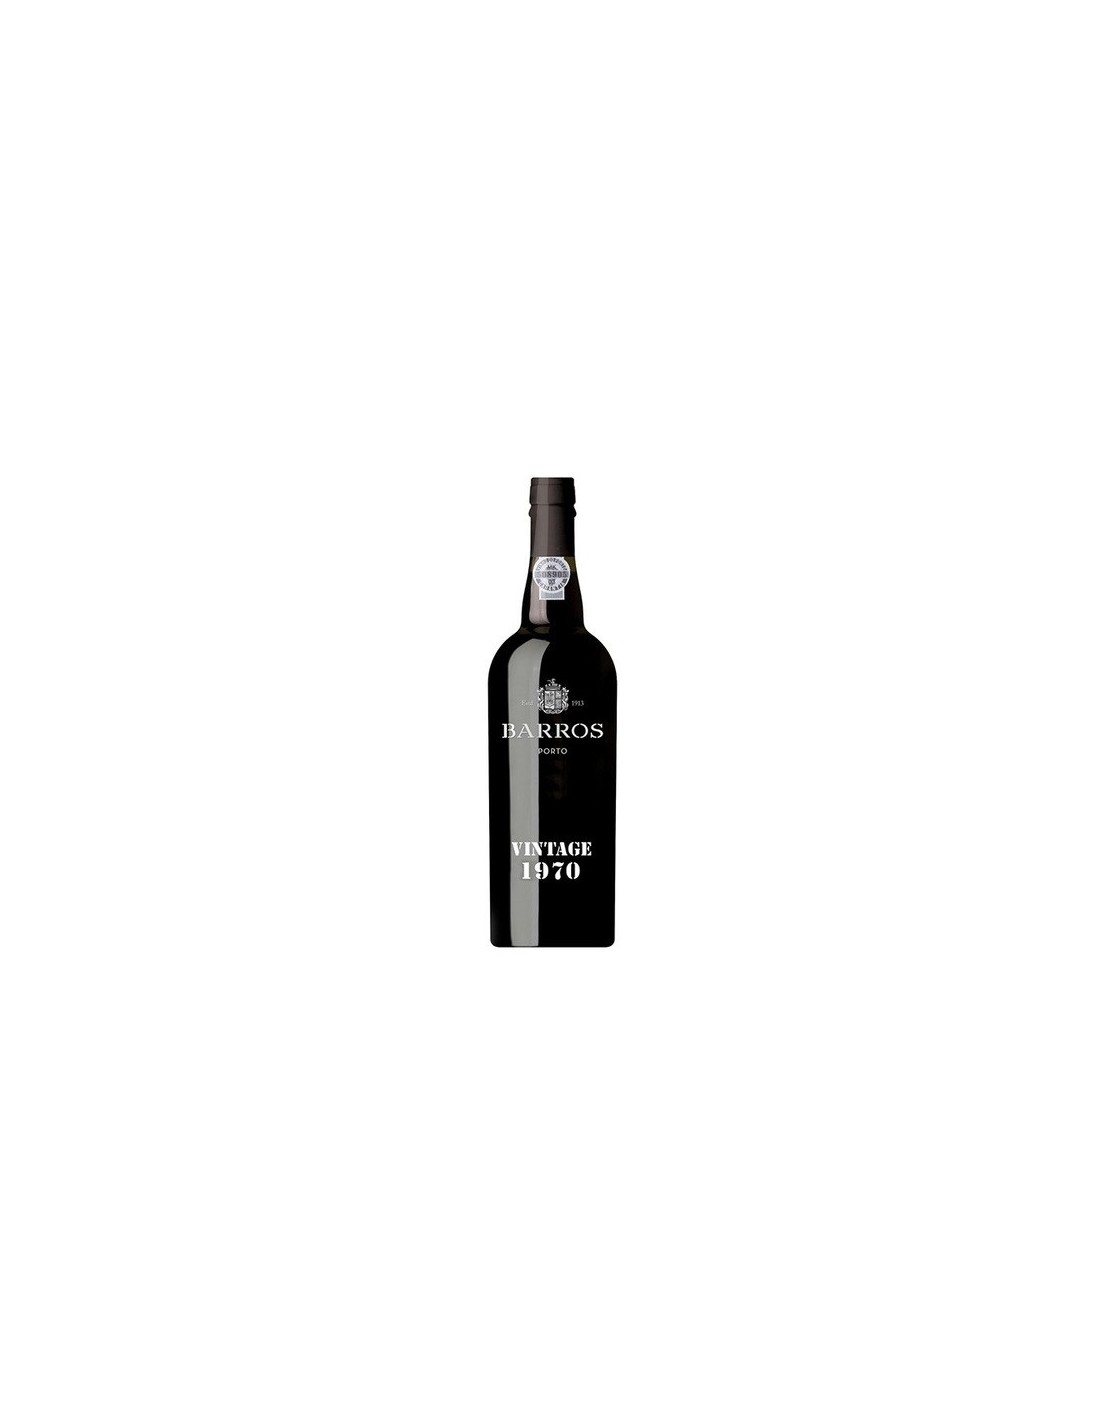 Vin porto rosu dulce, Barros Vintage, 1970, 0.75L, 21% alc., Portugalia alcooldiscount.ro